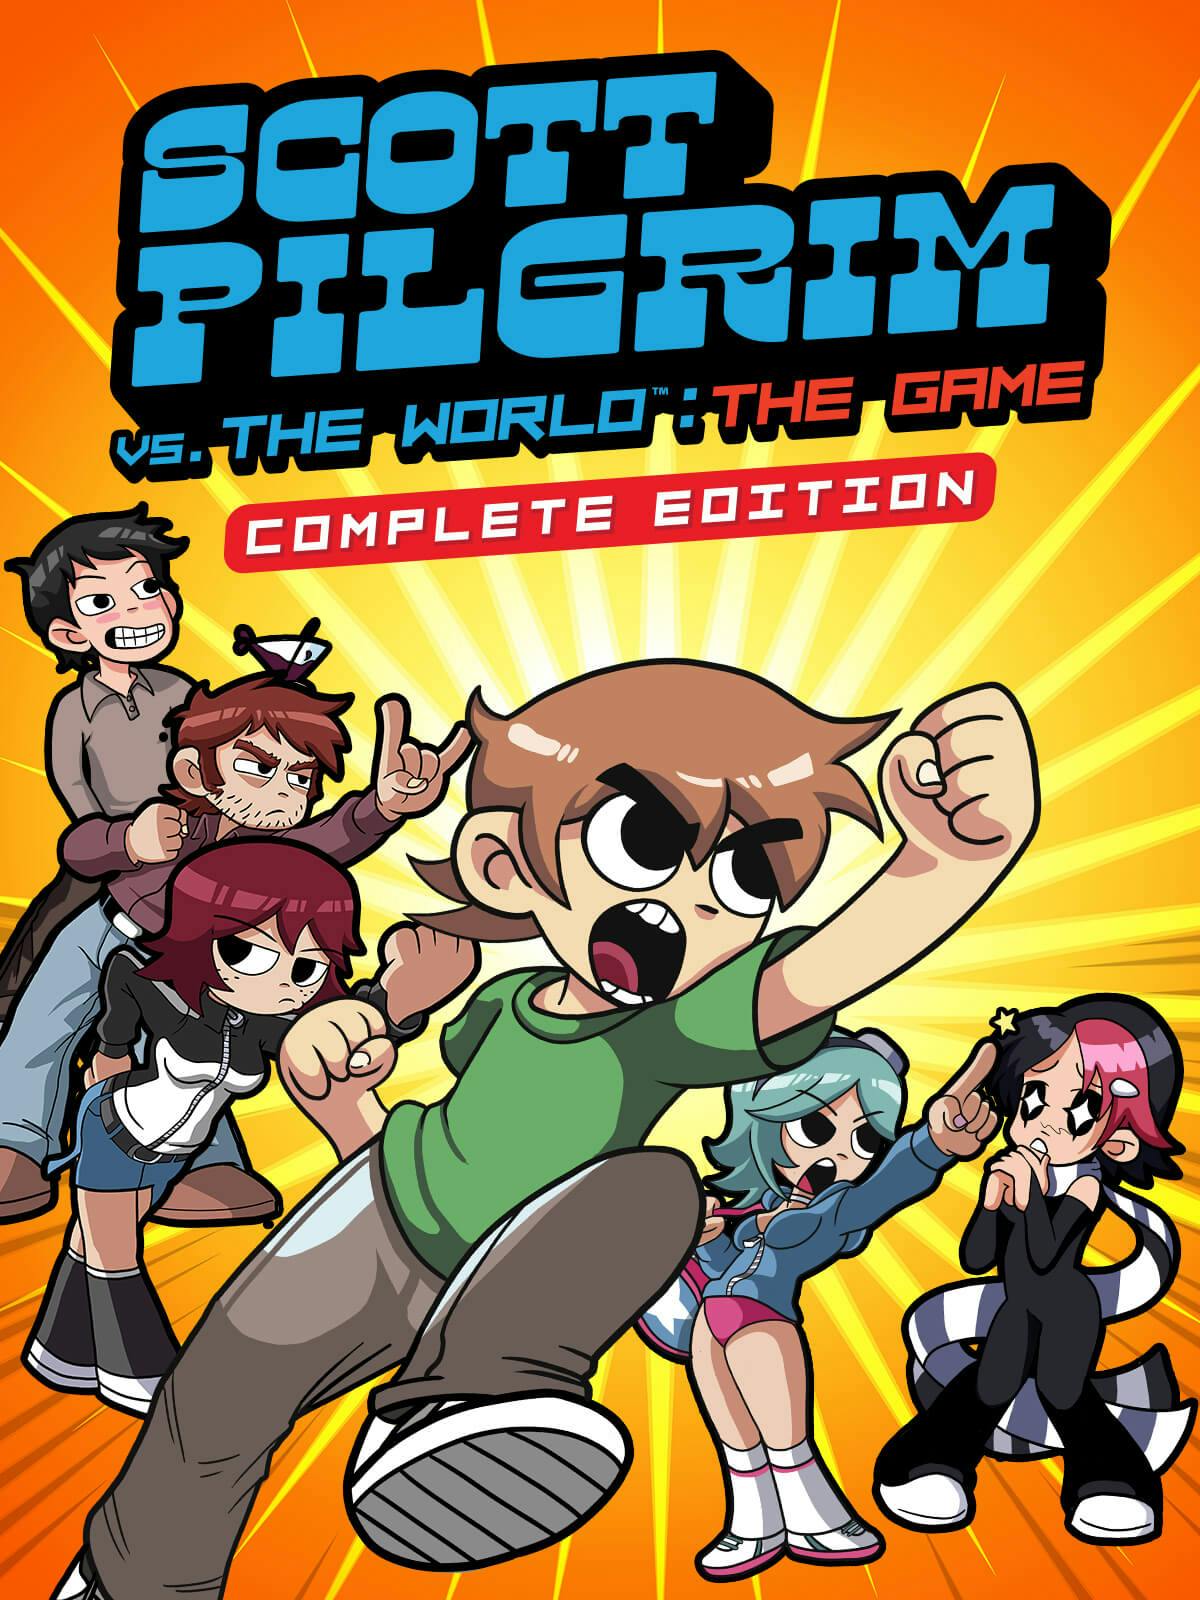 Scott Pilgrim VS The World: The Game